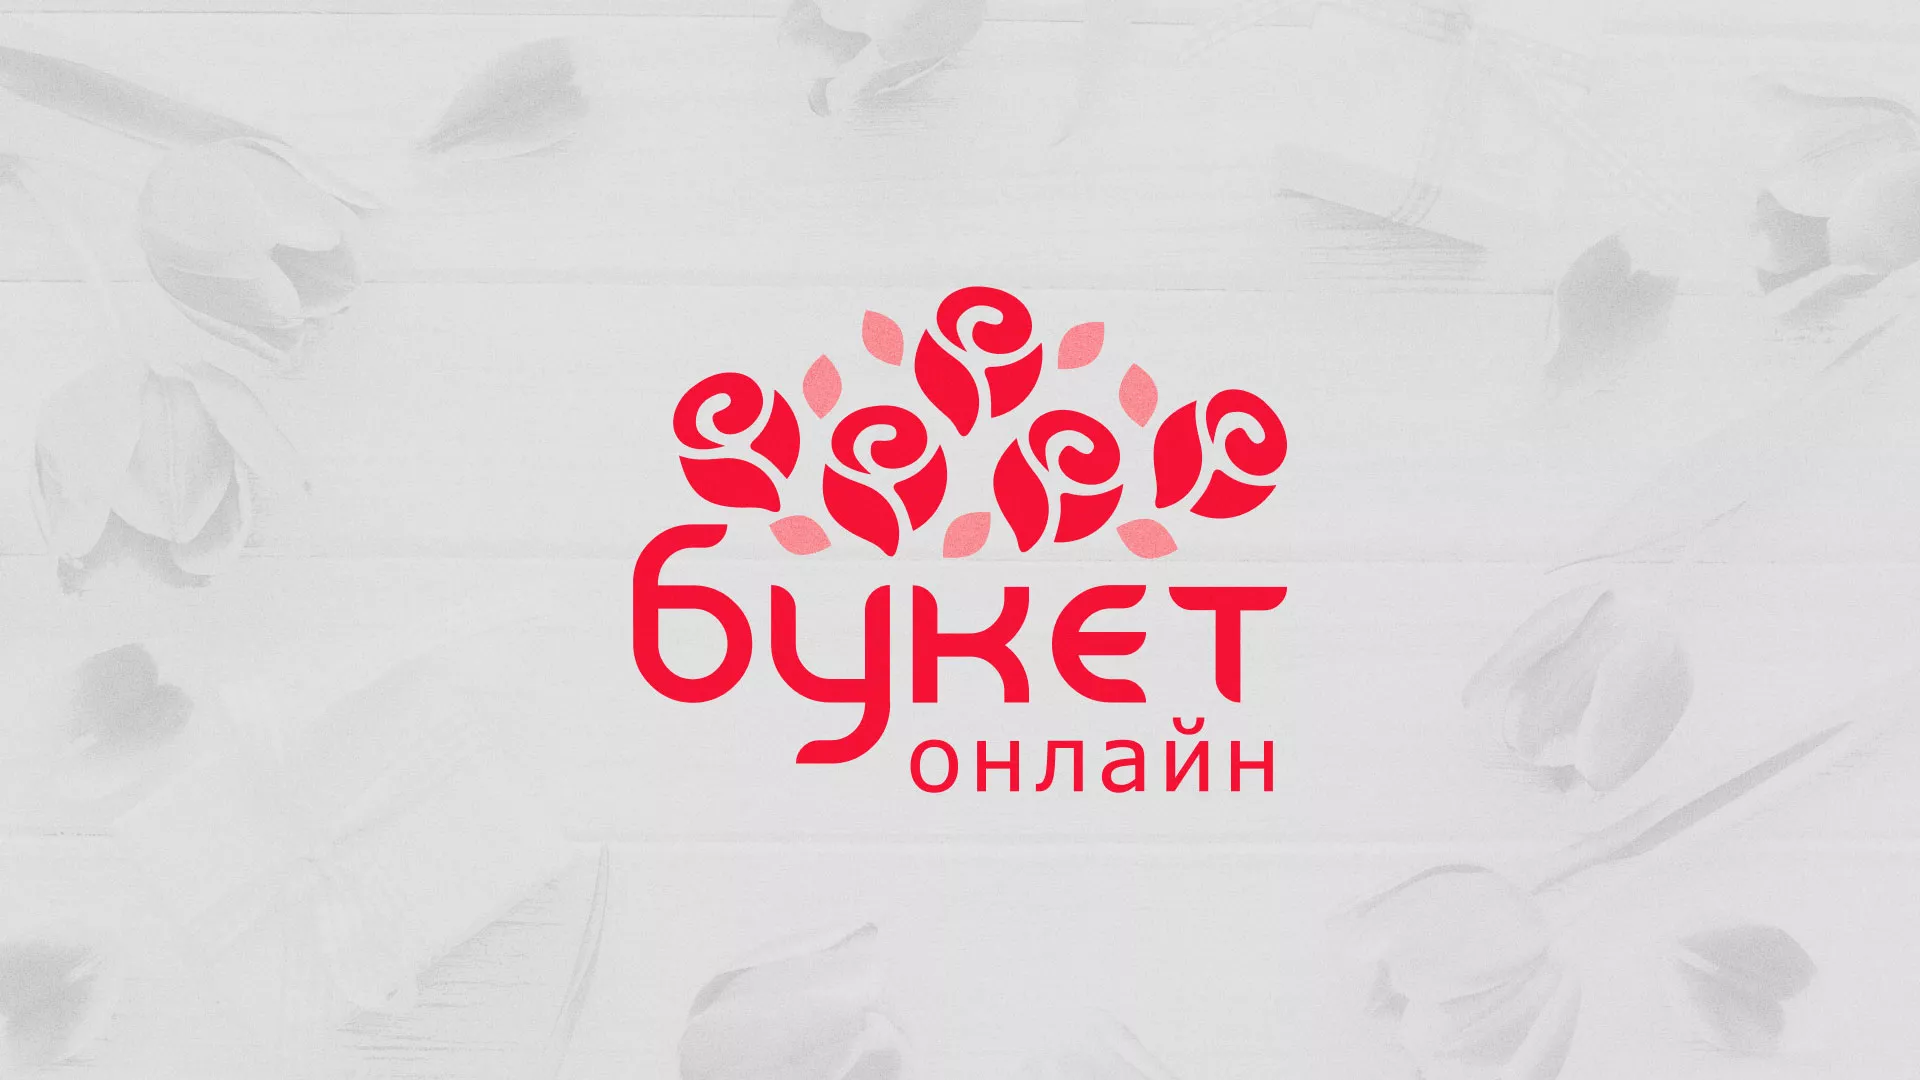 Создание интернет-магазина «Букет-онлайн» по цветам в Чудово